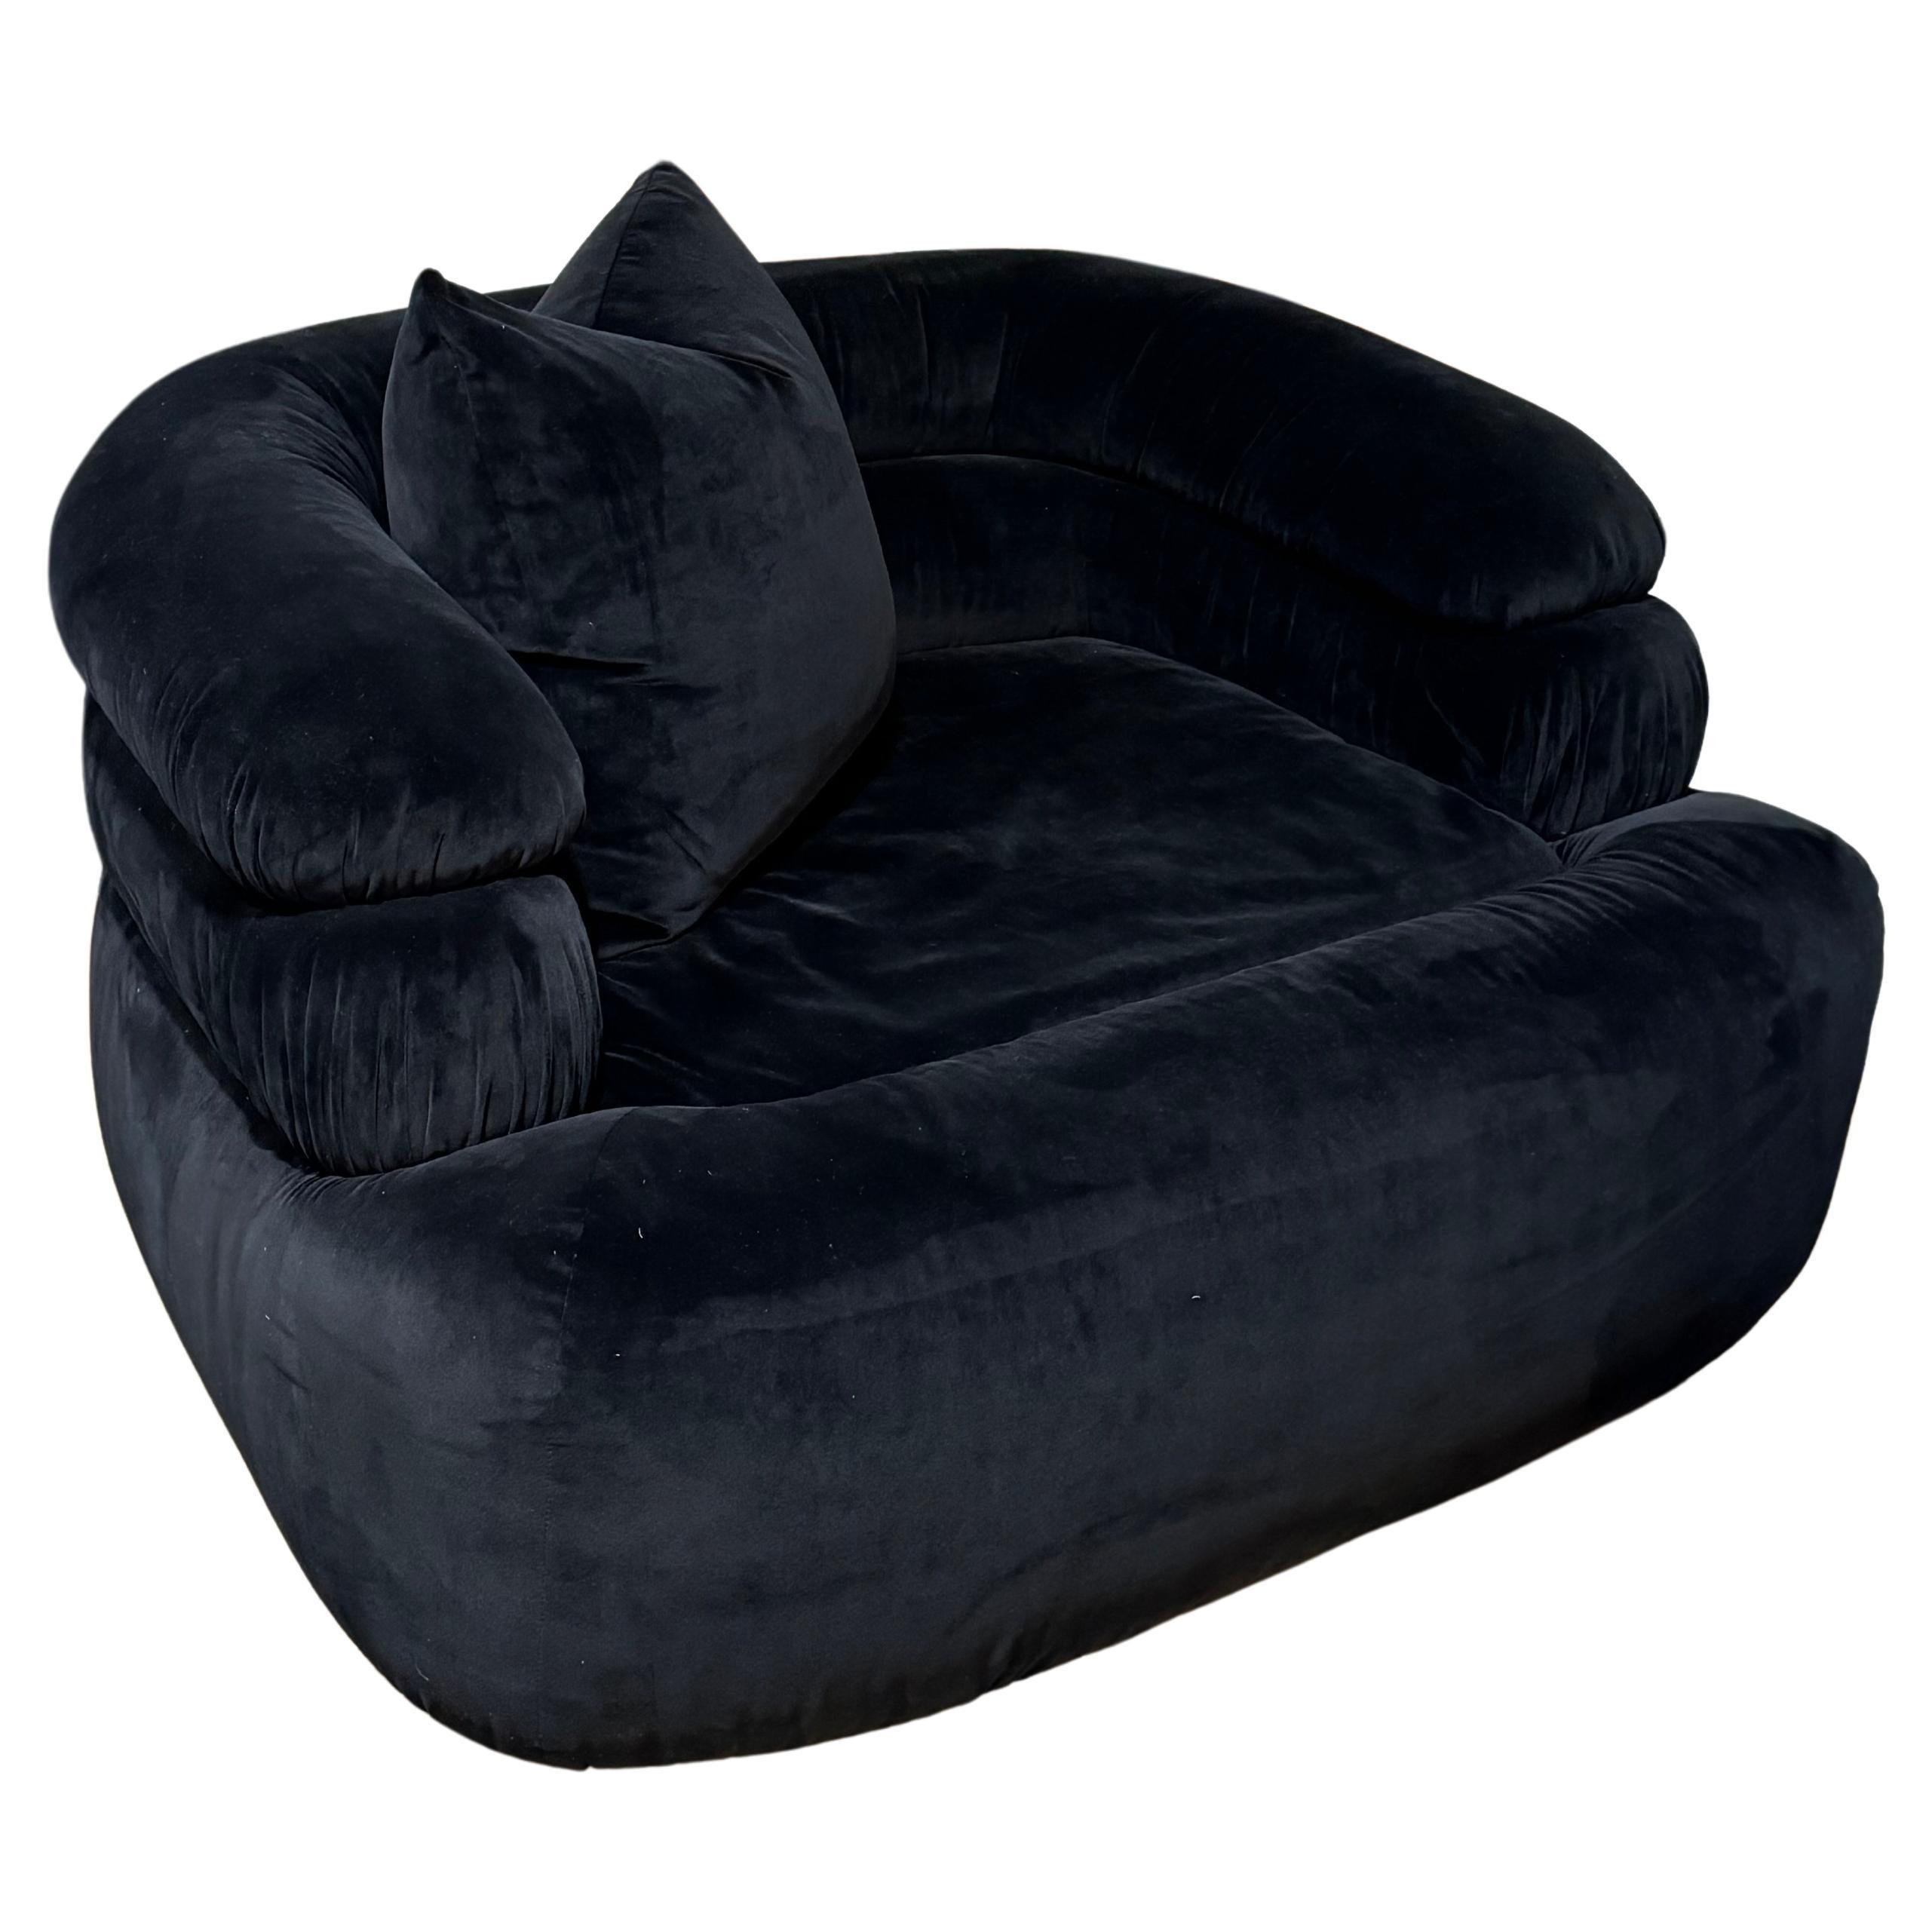 Benutzerdefinierte MLB Runde Rückenlehne kanalisiert Swivel Club Chair
Gepolstert mit schwarzem Samt
COM (Customer's Own Material) verfügbar
